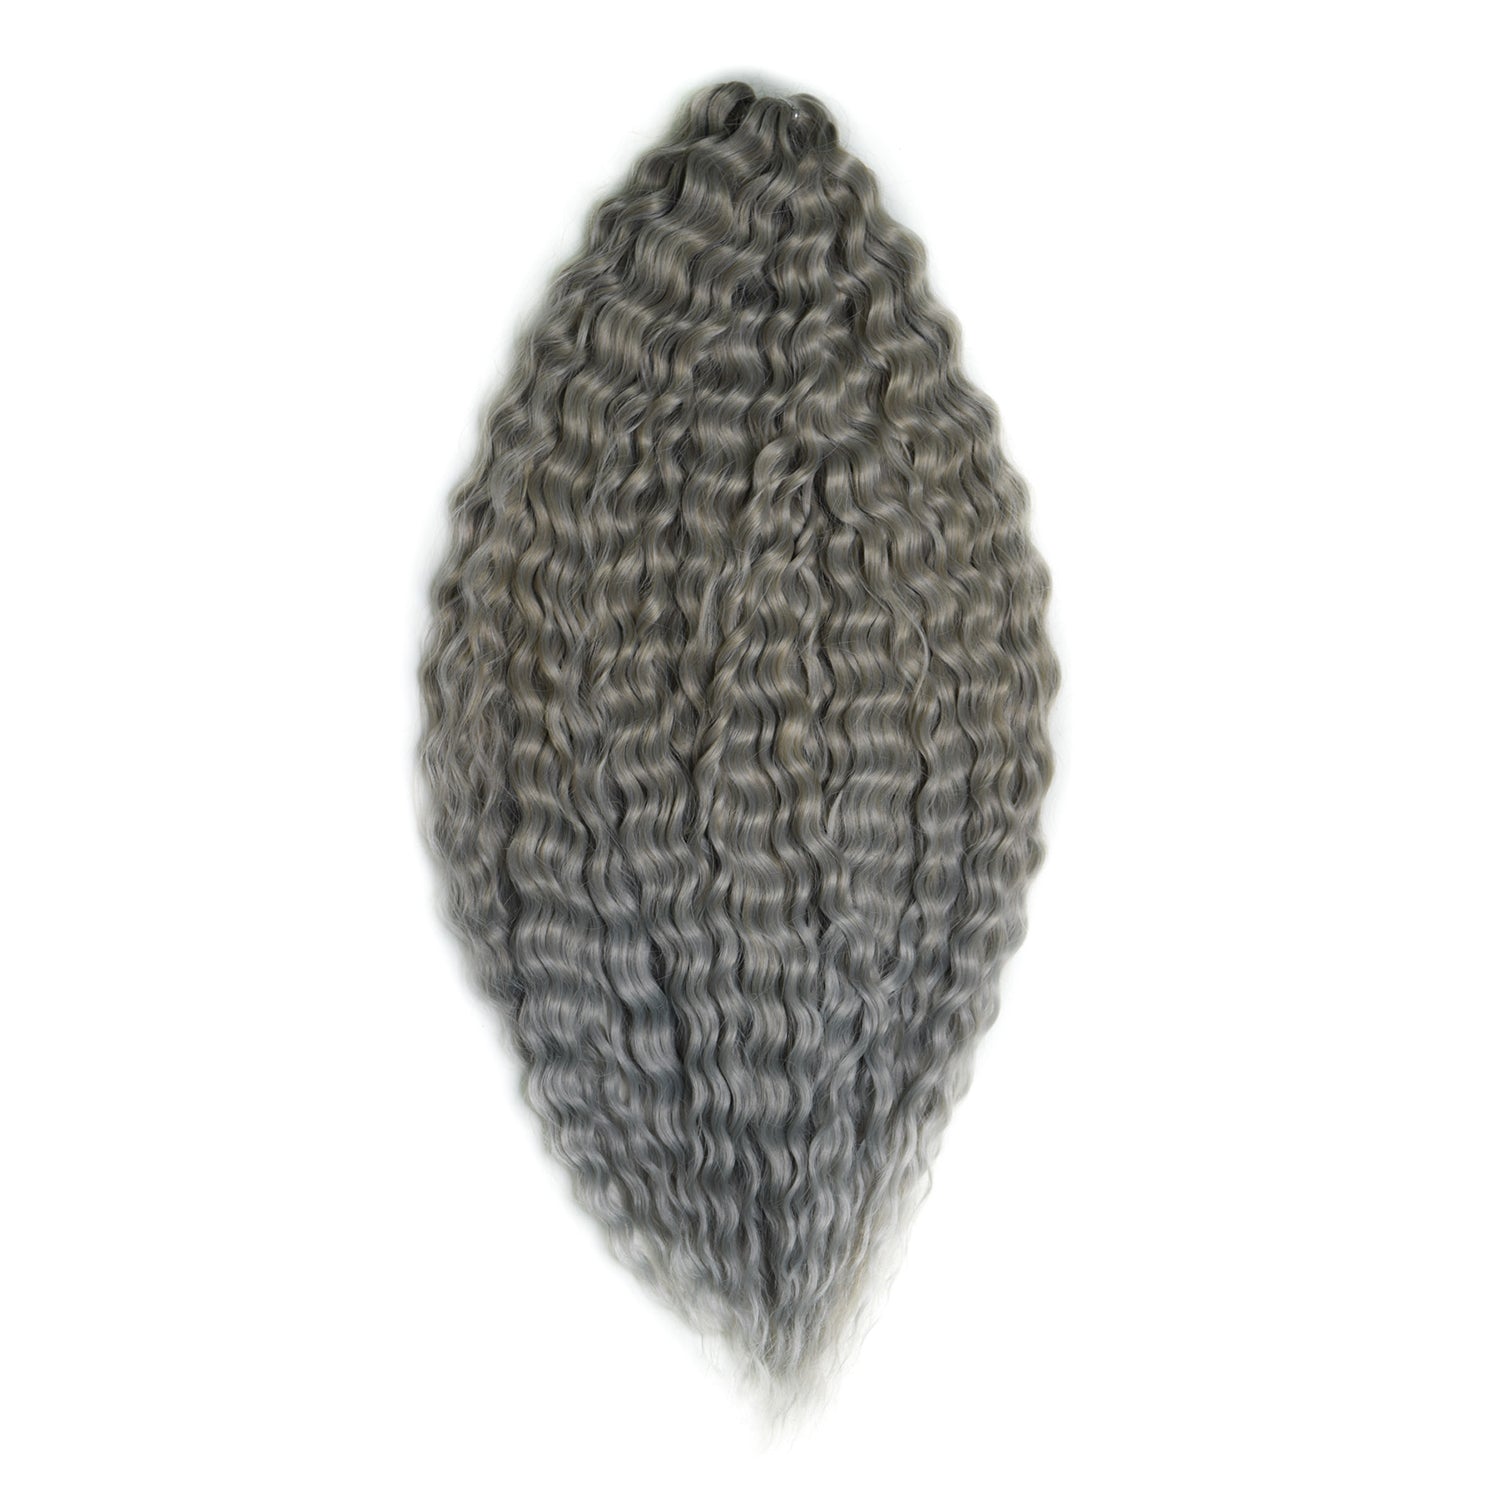 Афрокудри для плетения волос Ariel цвет T16 60A Cерый длина 55см вес 300г галеты овощные bonduelle королевские 300г